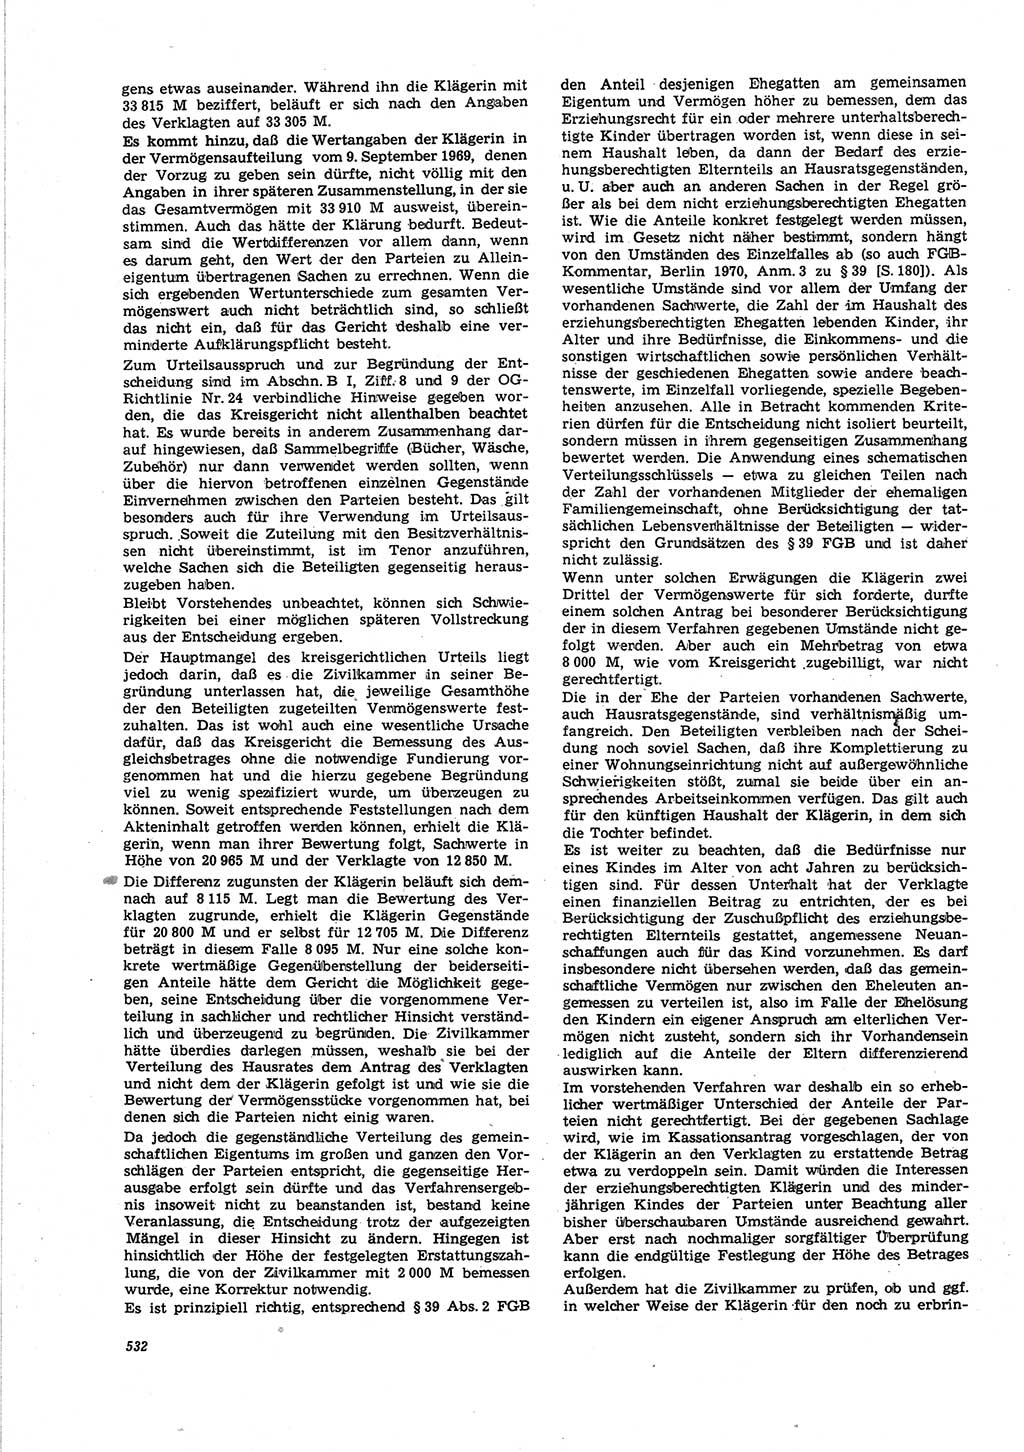 Neue Justiz (NJ), Zeitschrift für Recht und Rechtswissenschaft [Deutsche Demokratische Republik (DDR)], 25. Jahrgang 1971, Seite 532 (NJ DDR 1971, S. 532)